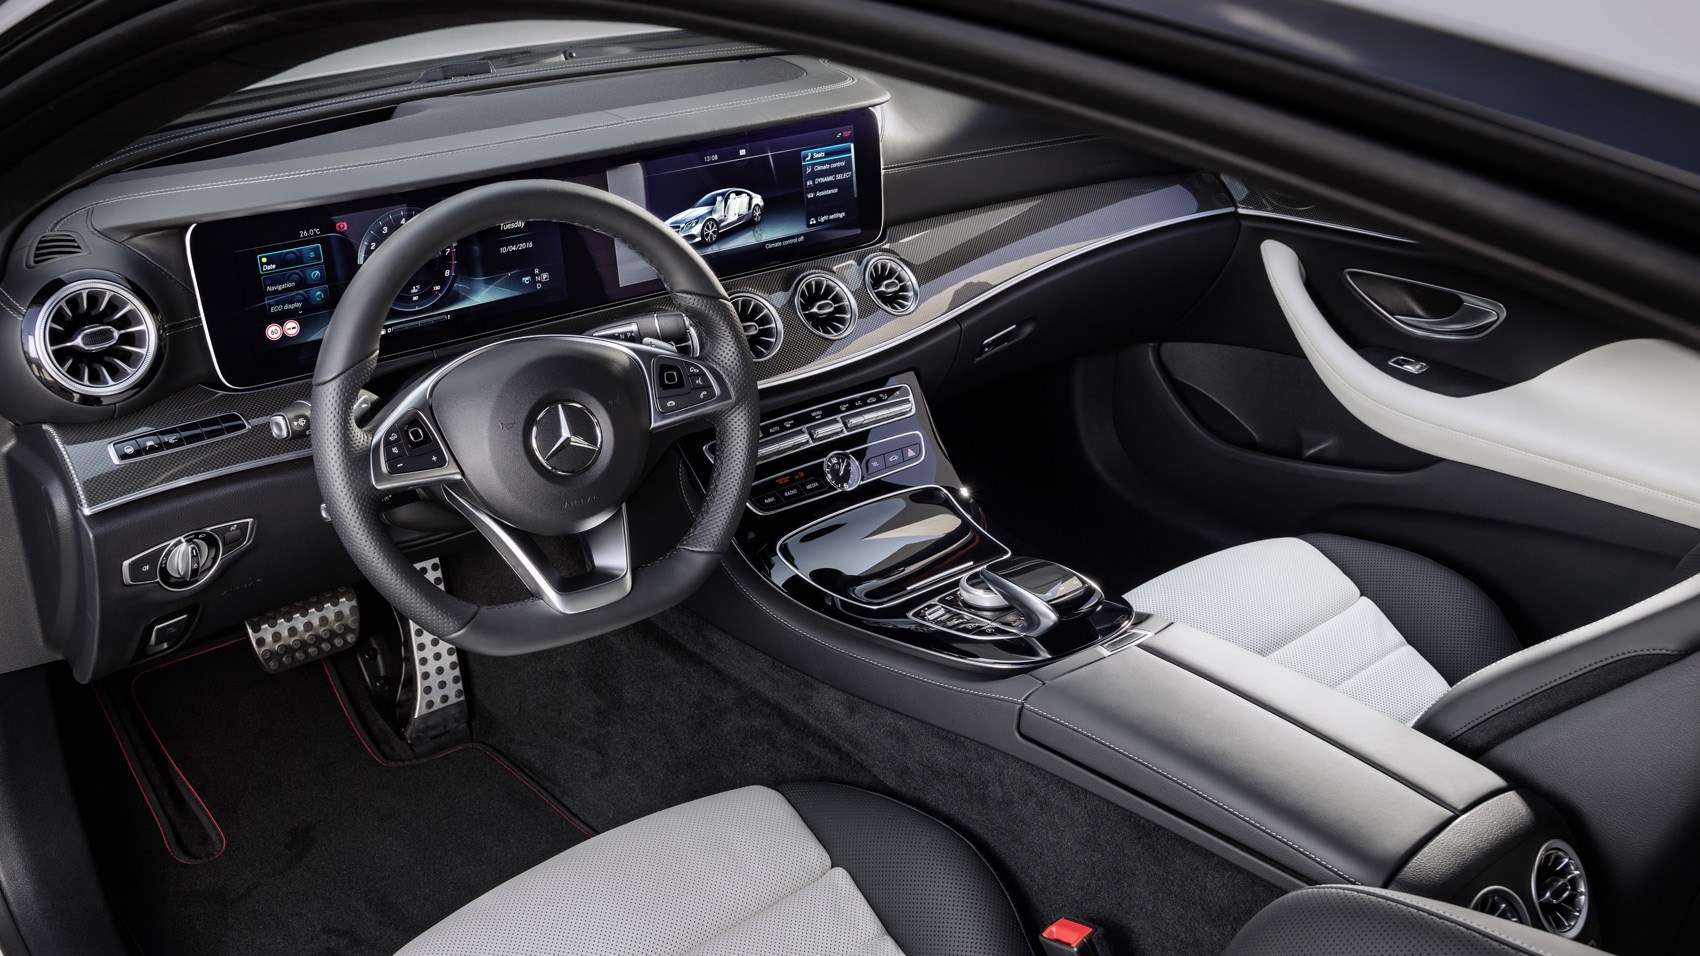 Mercedes E220d Coupe interior